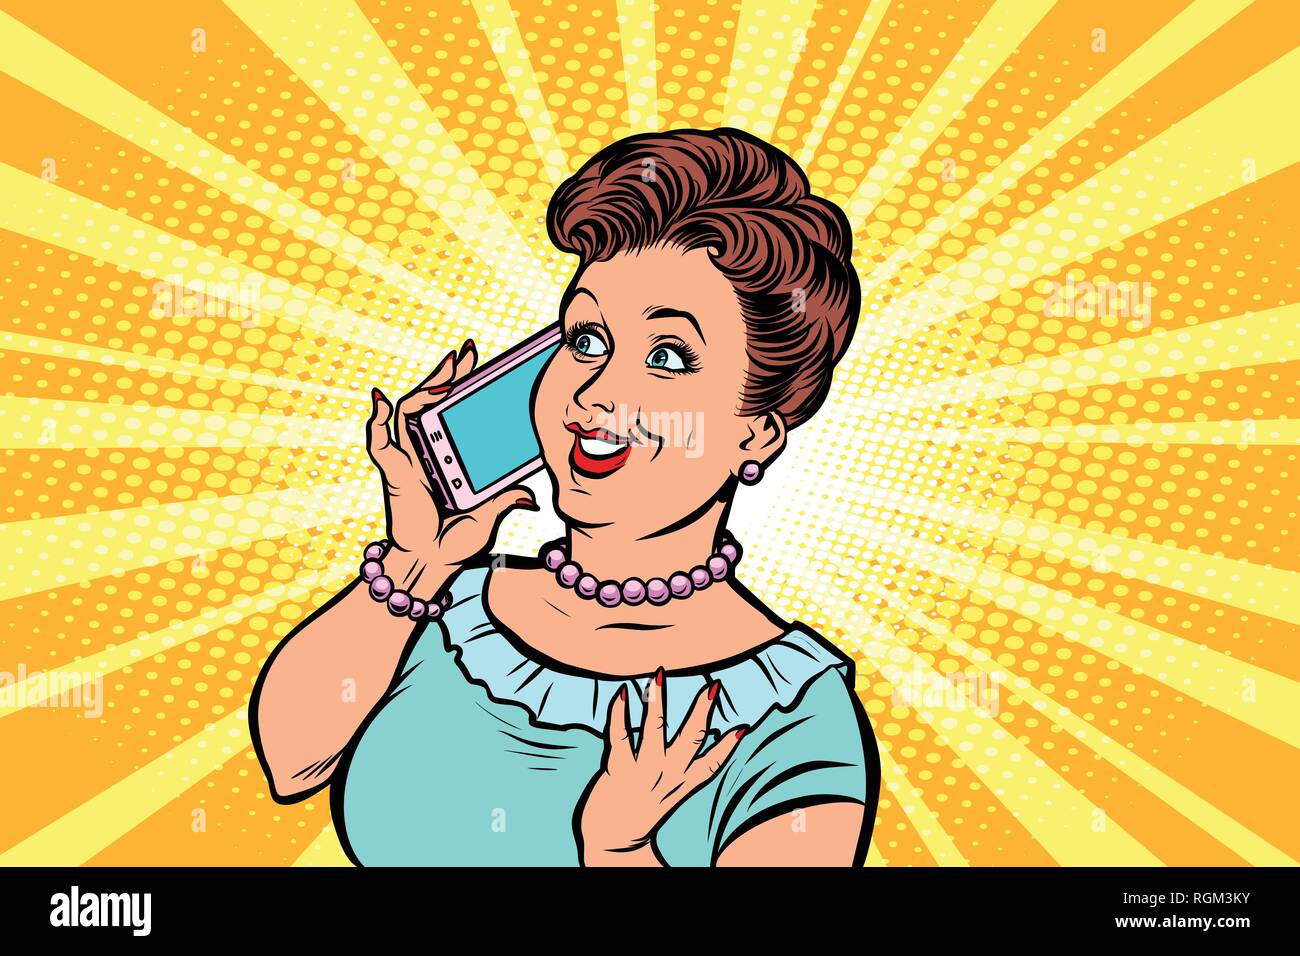 Mujer de mediana edad hablando por teléfono. Comic cartoon pop art retro ilustración vectorial dibujo a mano Ilustración del Vector